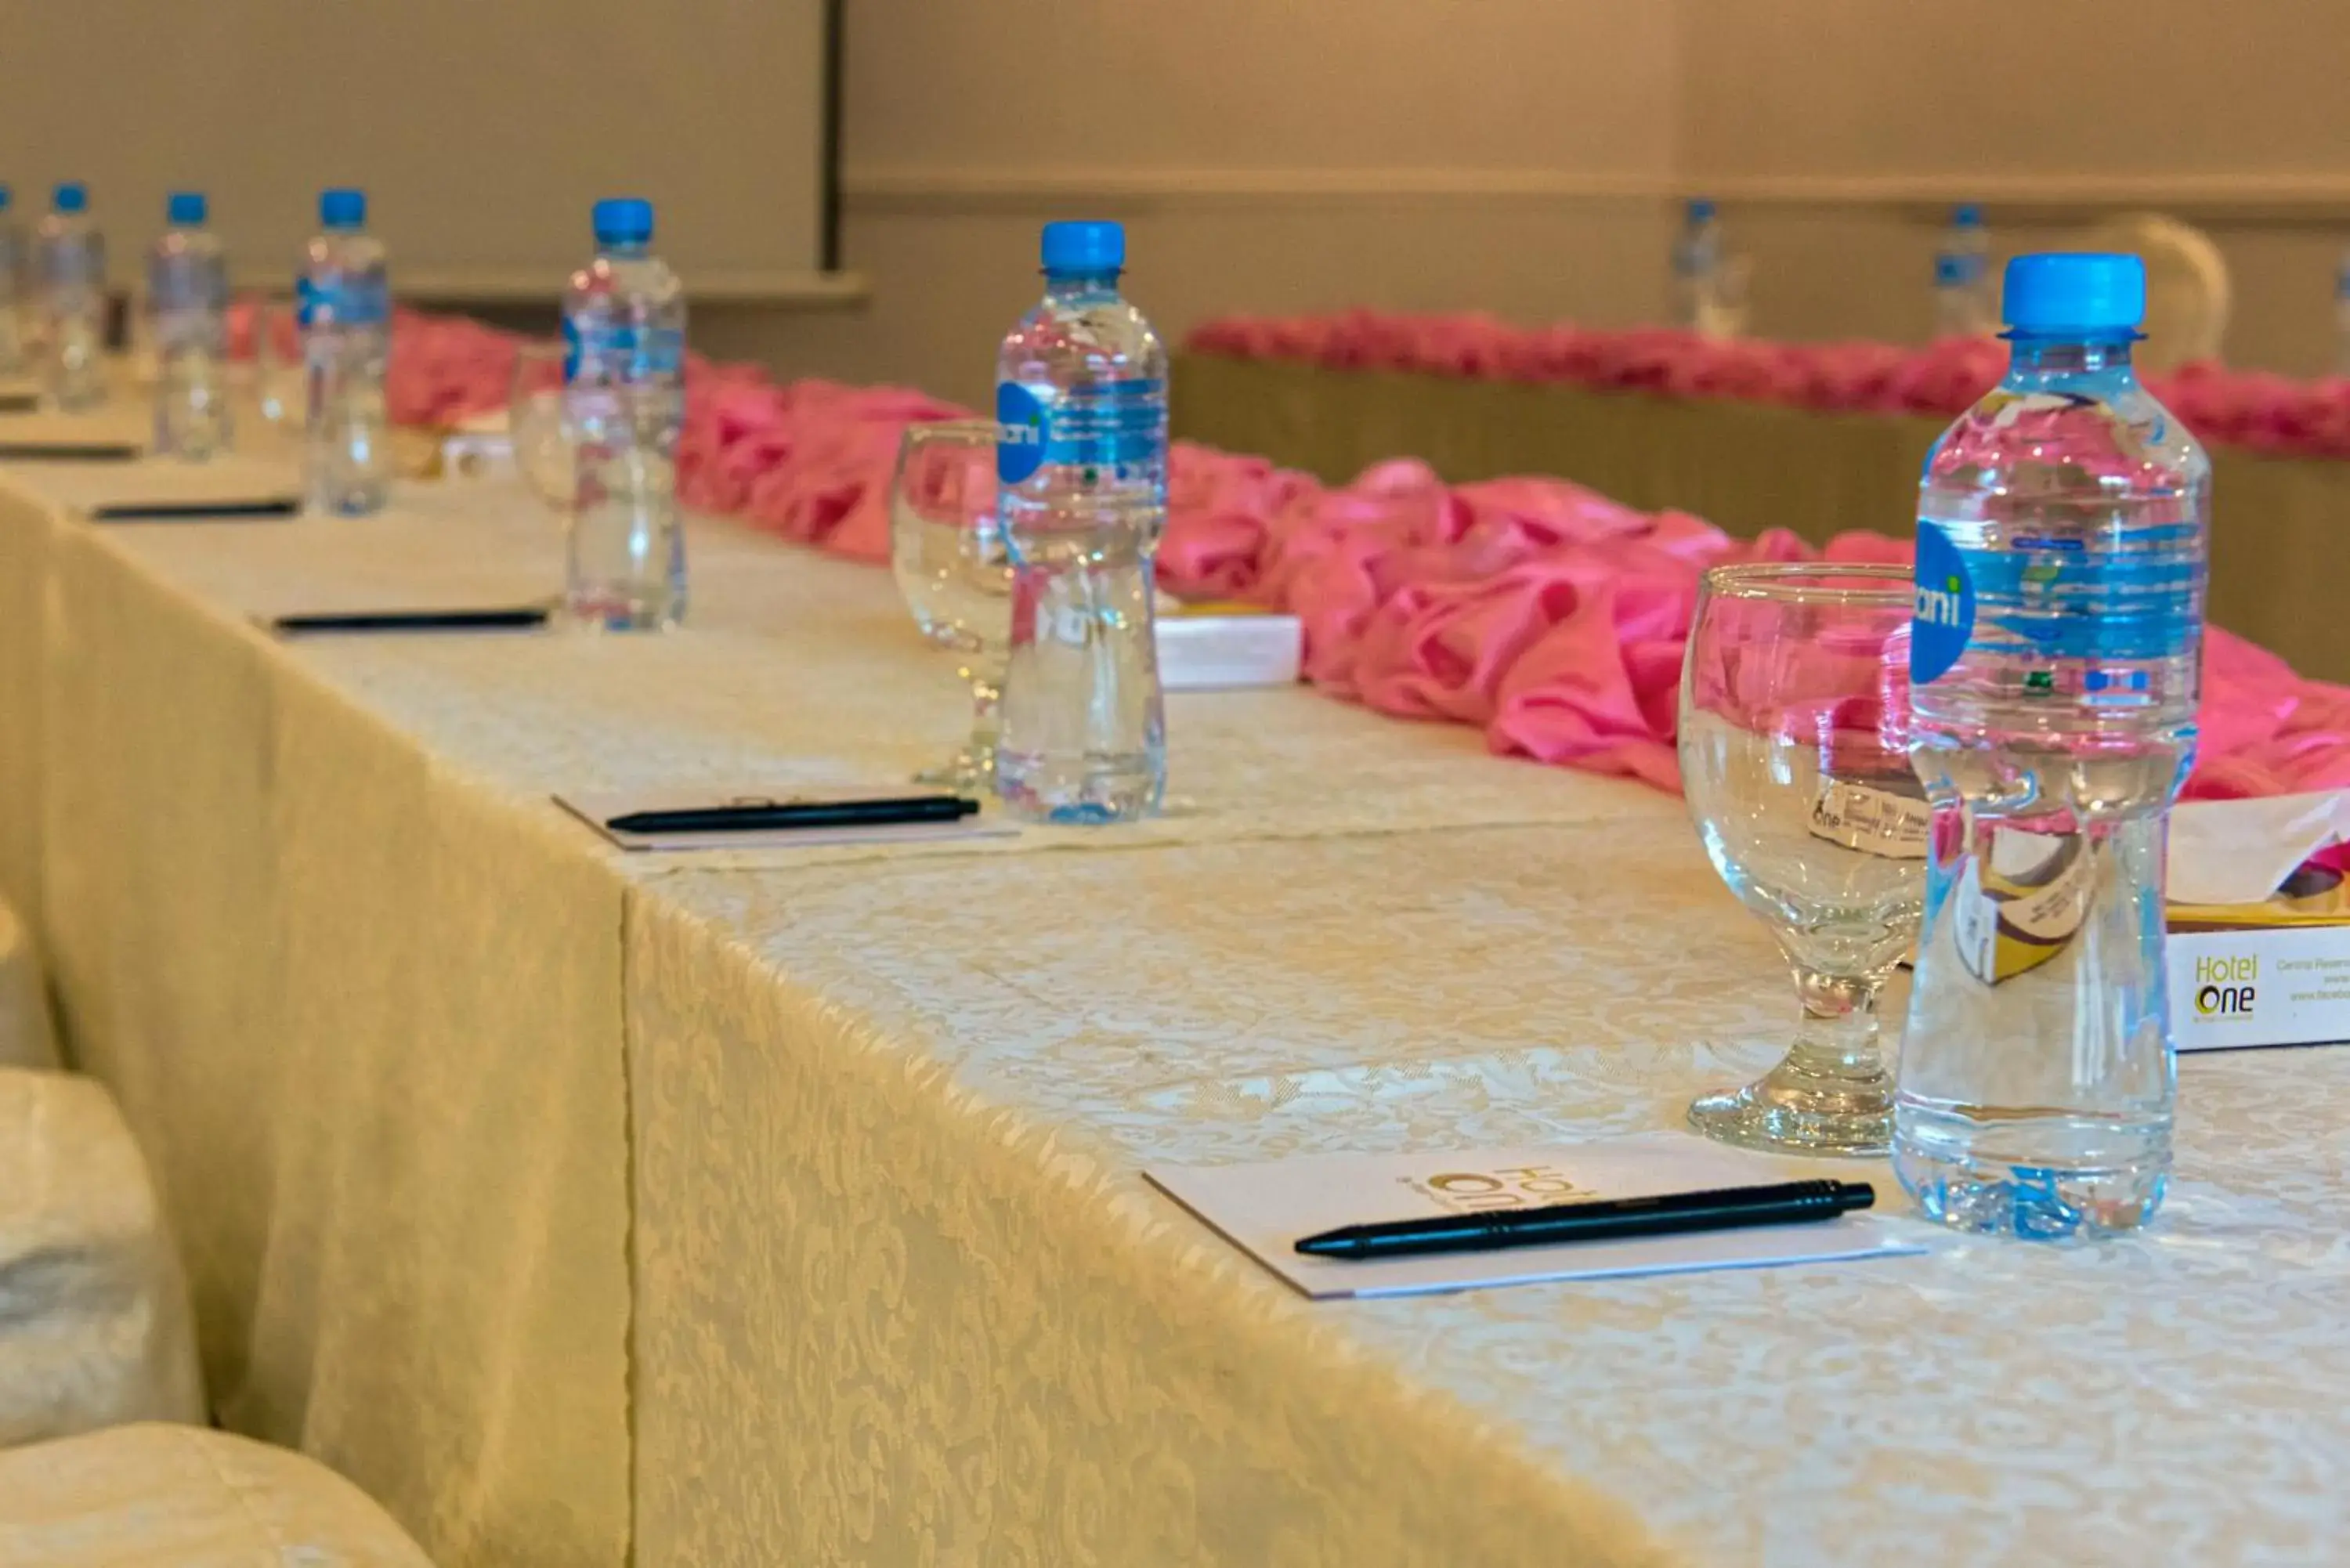 Banquet/Function facilities, Banquet Facilities in Hotel One Lalazar Multan